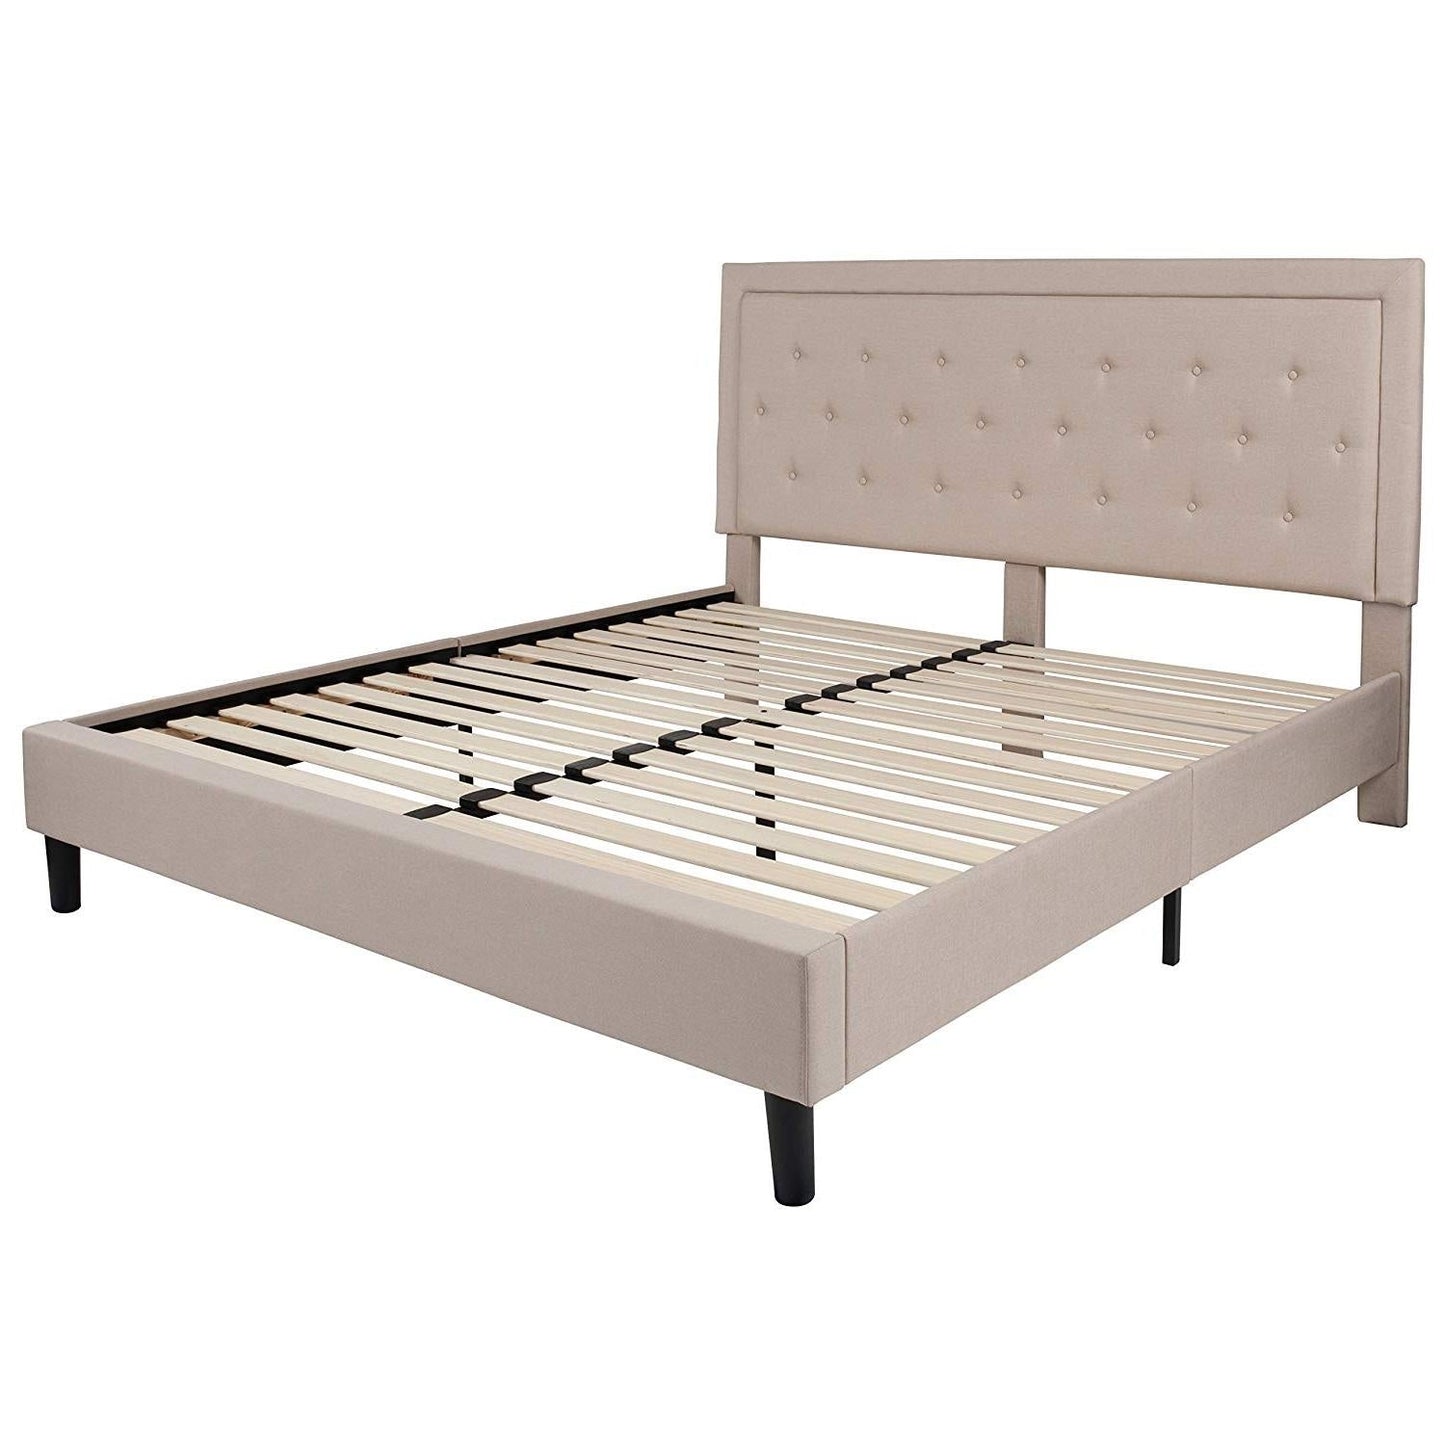 Bedroom > Bed Frames > Platform Beds - King Beige Upholstered Platform Bed Frame With Button Tufted Headboard